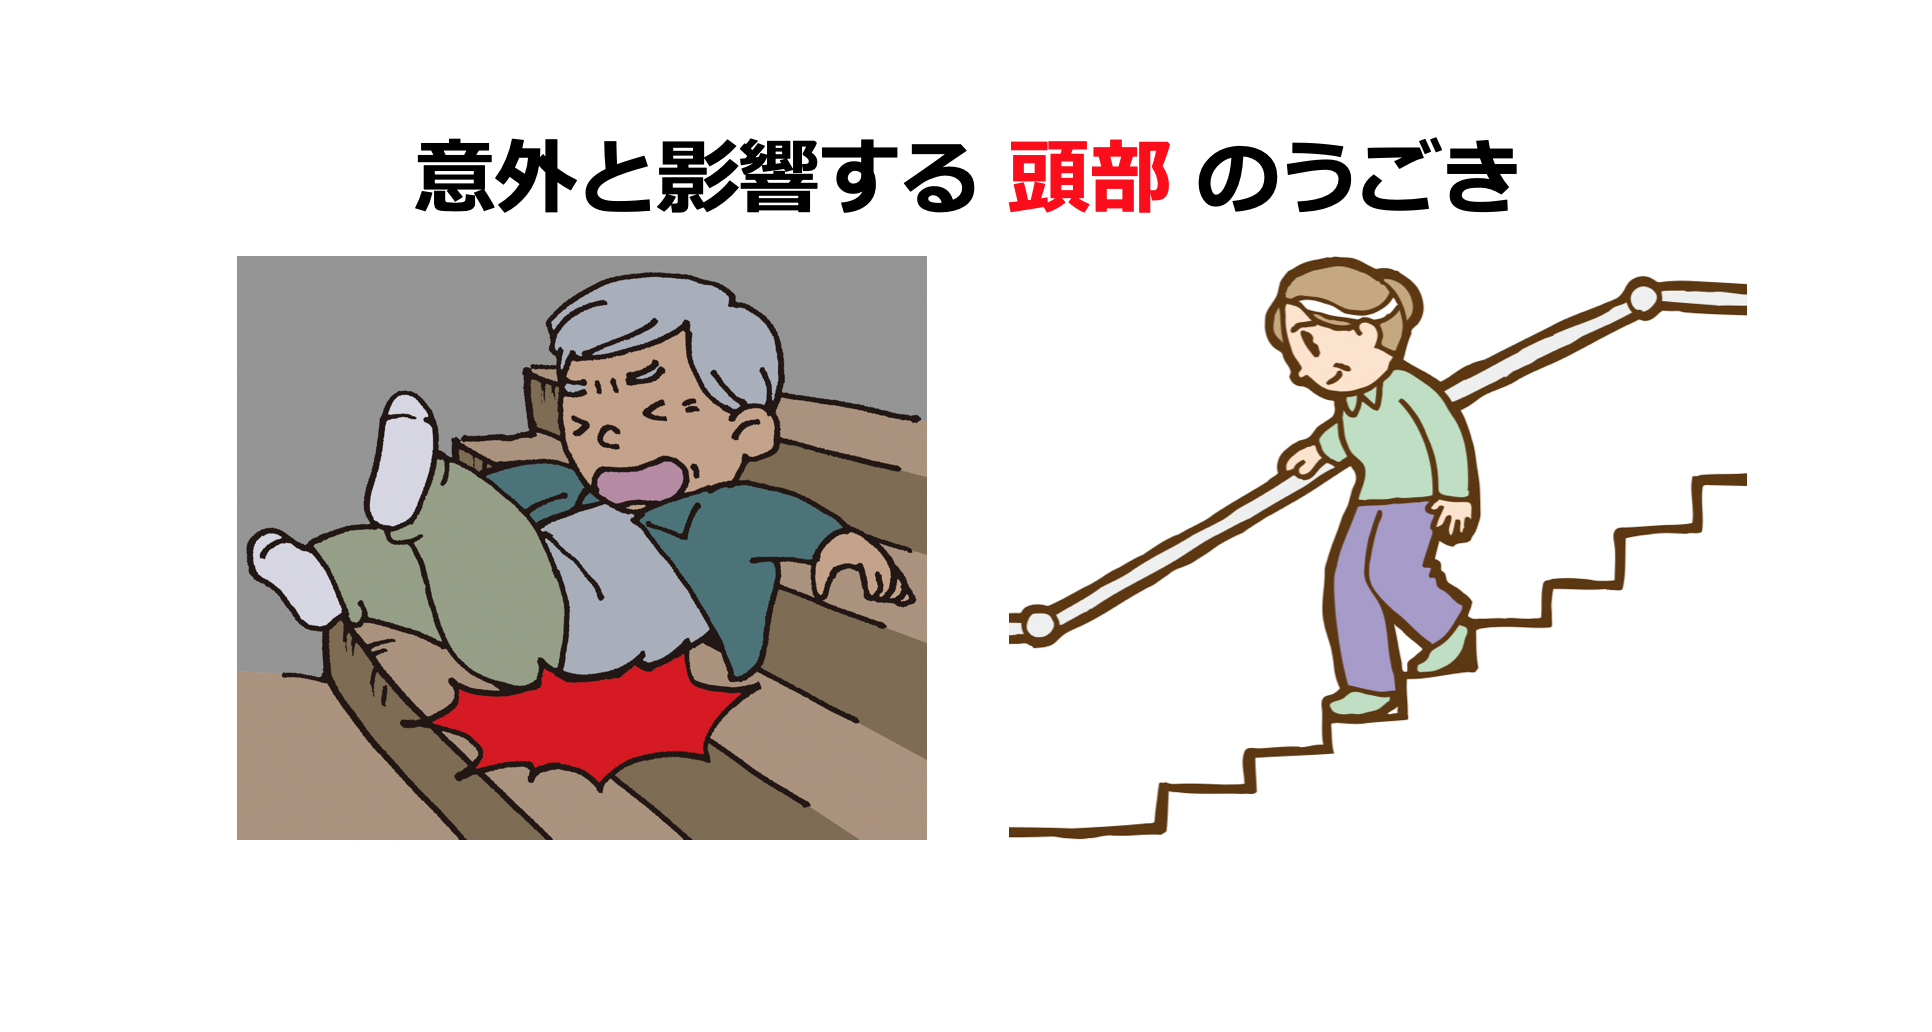 安全に階段を降りるために！頭部からみる階段昇降の動作分析